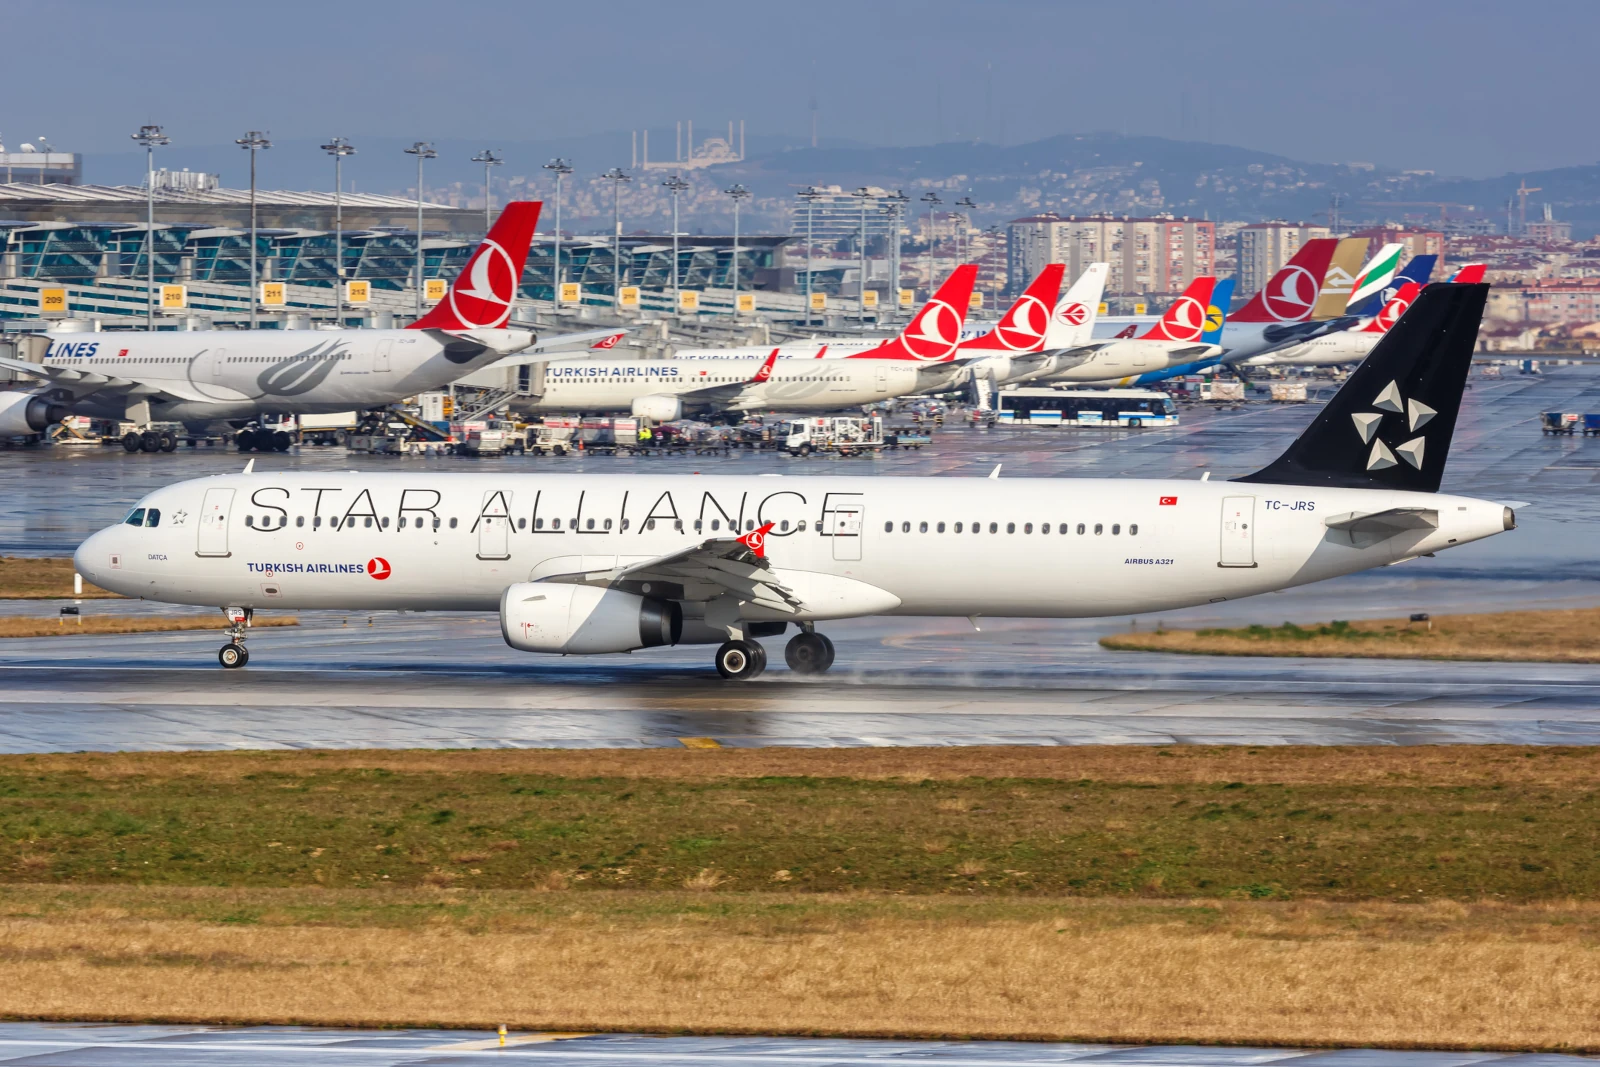 Turkish Airlines Airbus A321 Flugzeug mit der Star Alliance Sonderlackierung am Istanbul Atatürk Airport (IST)